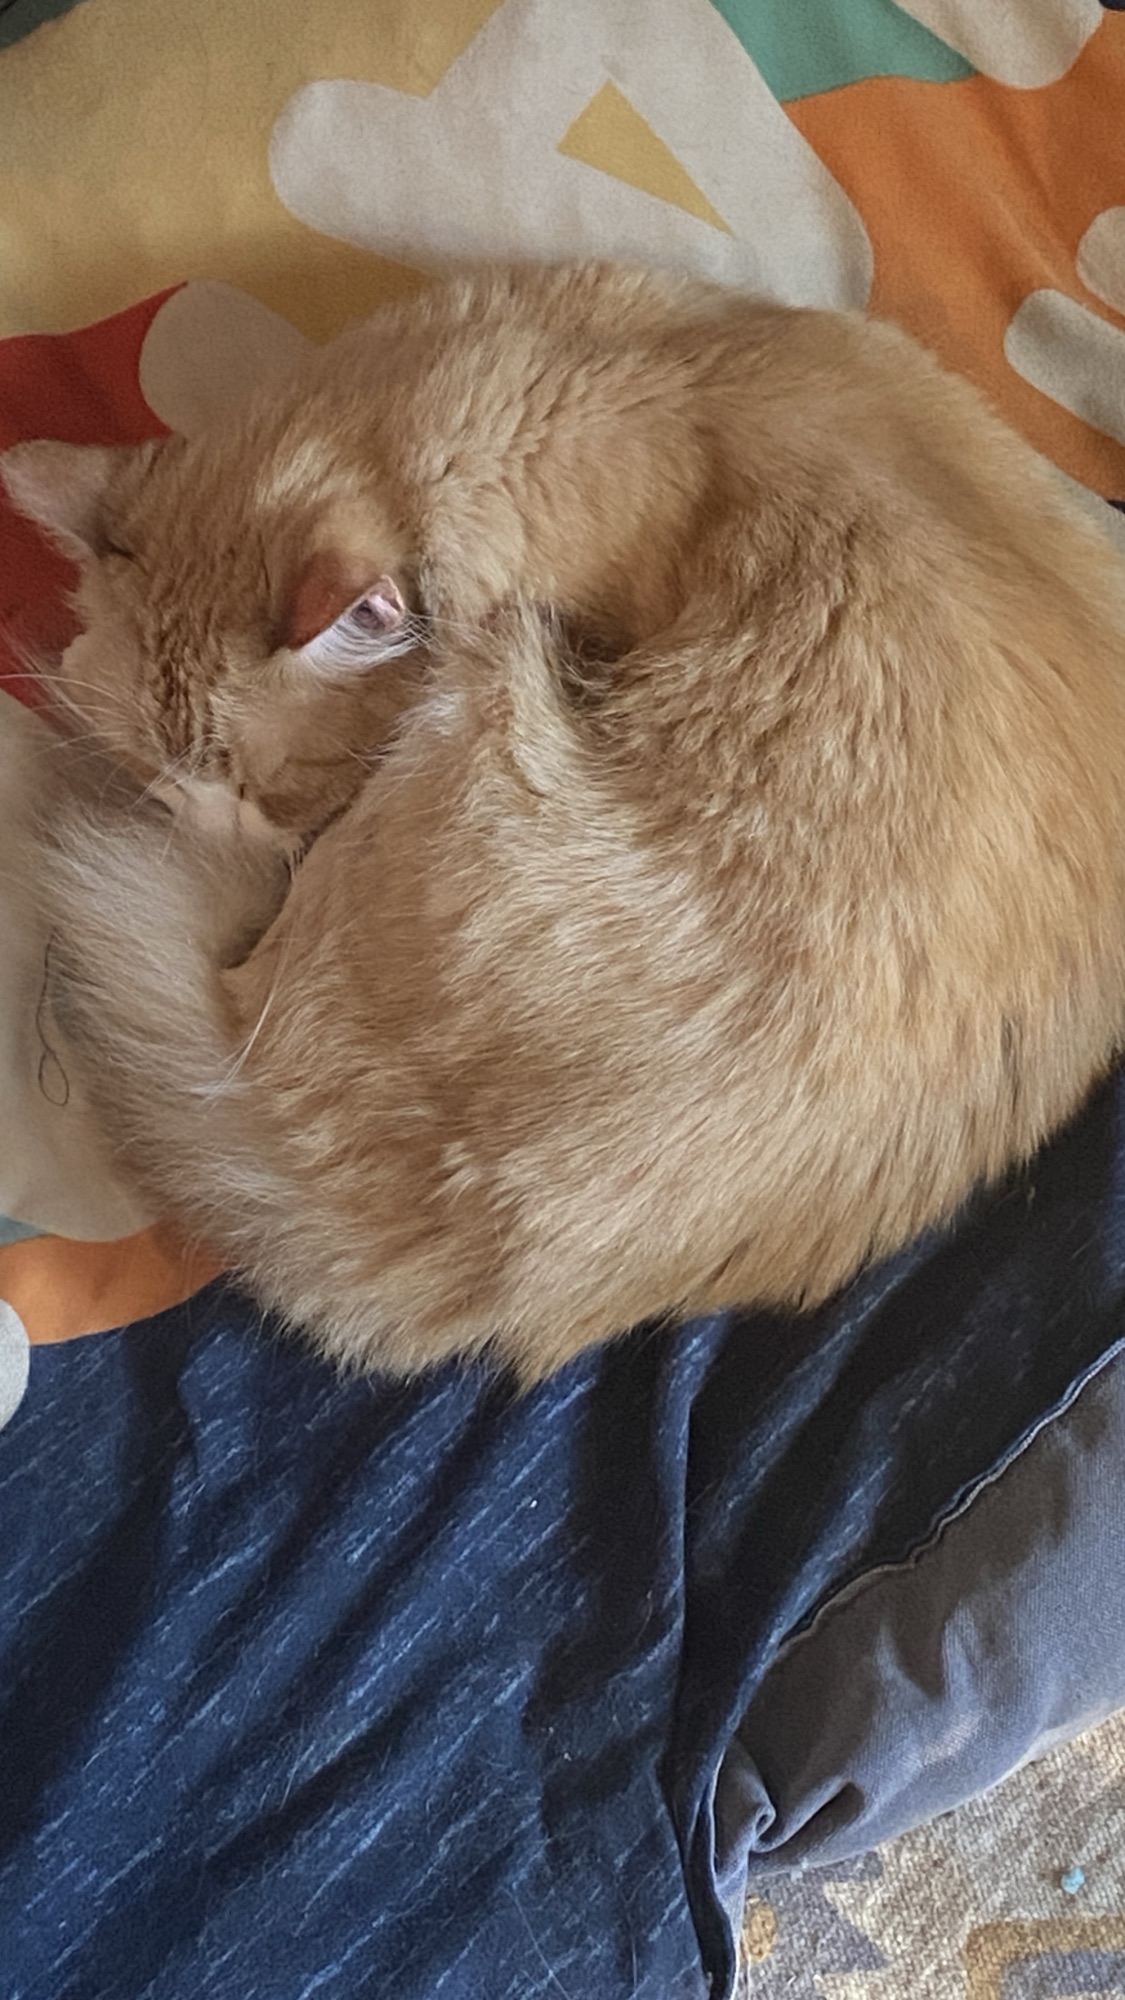 Cat on dog cushion